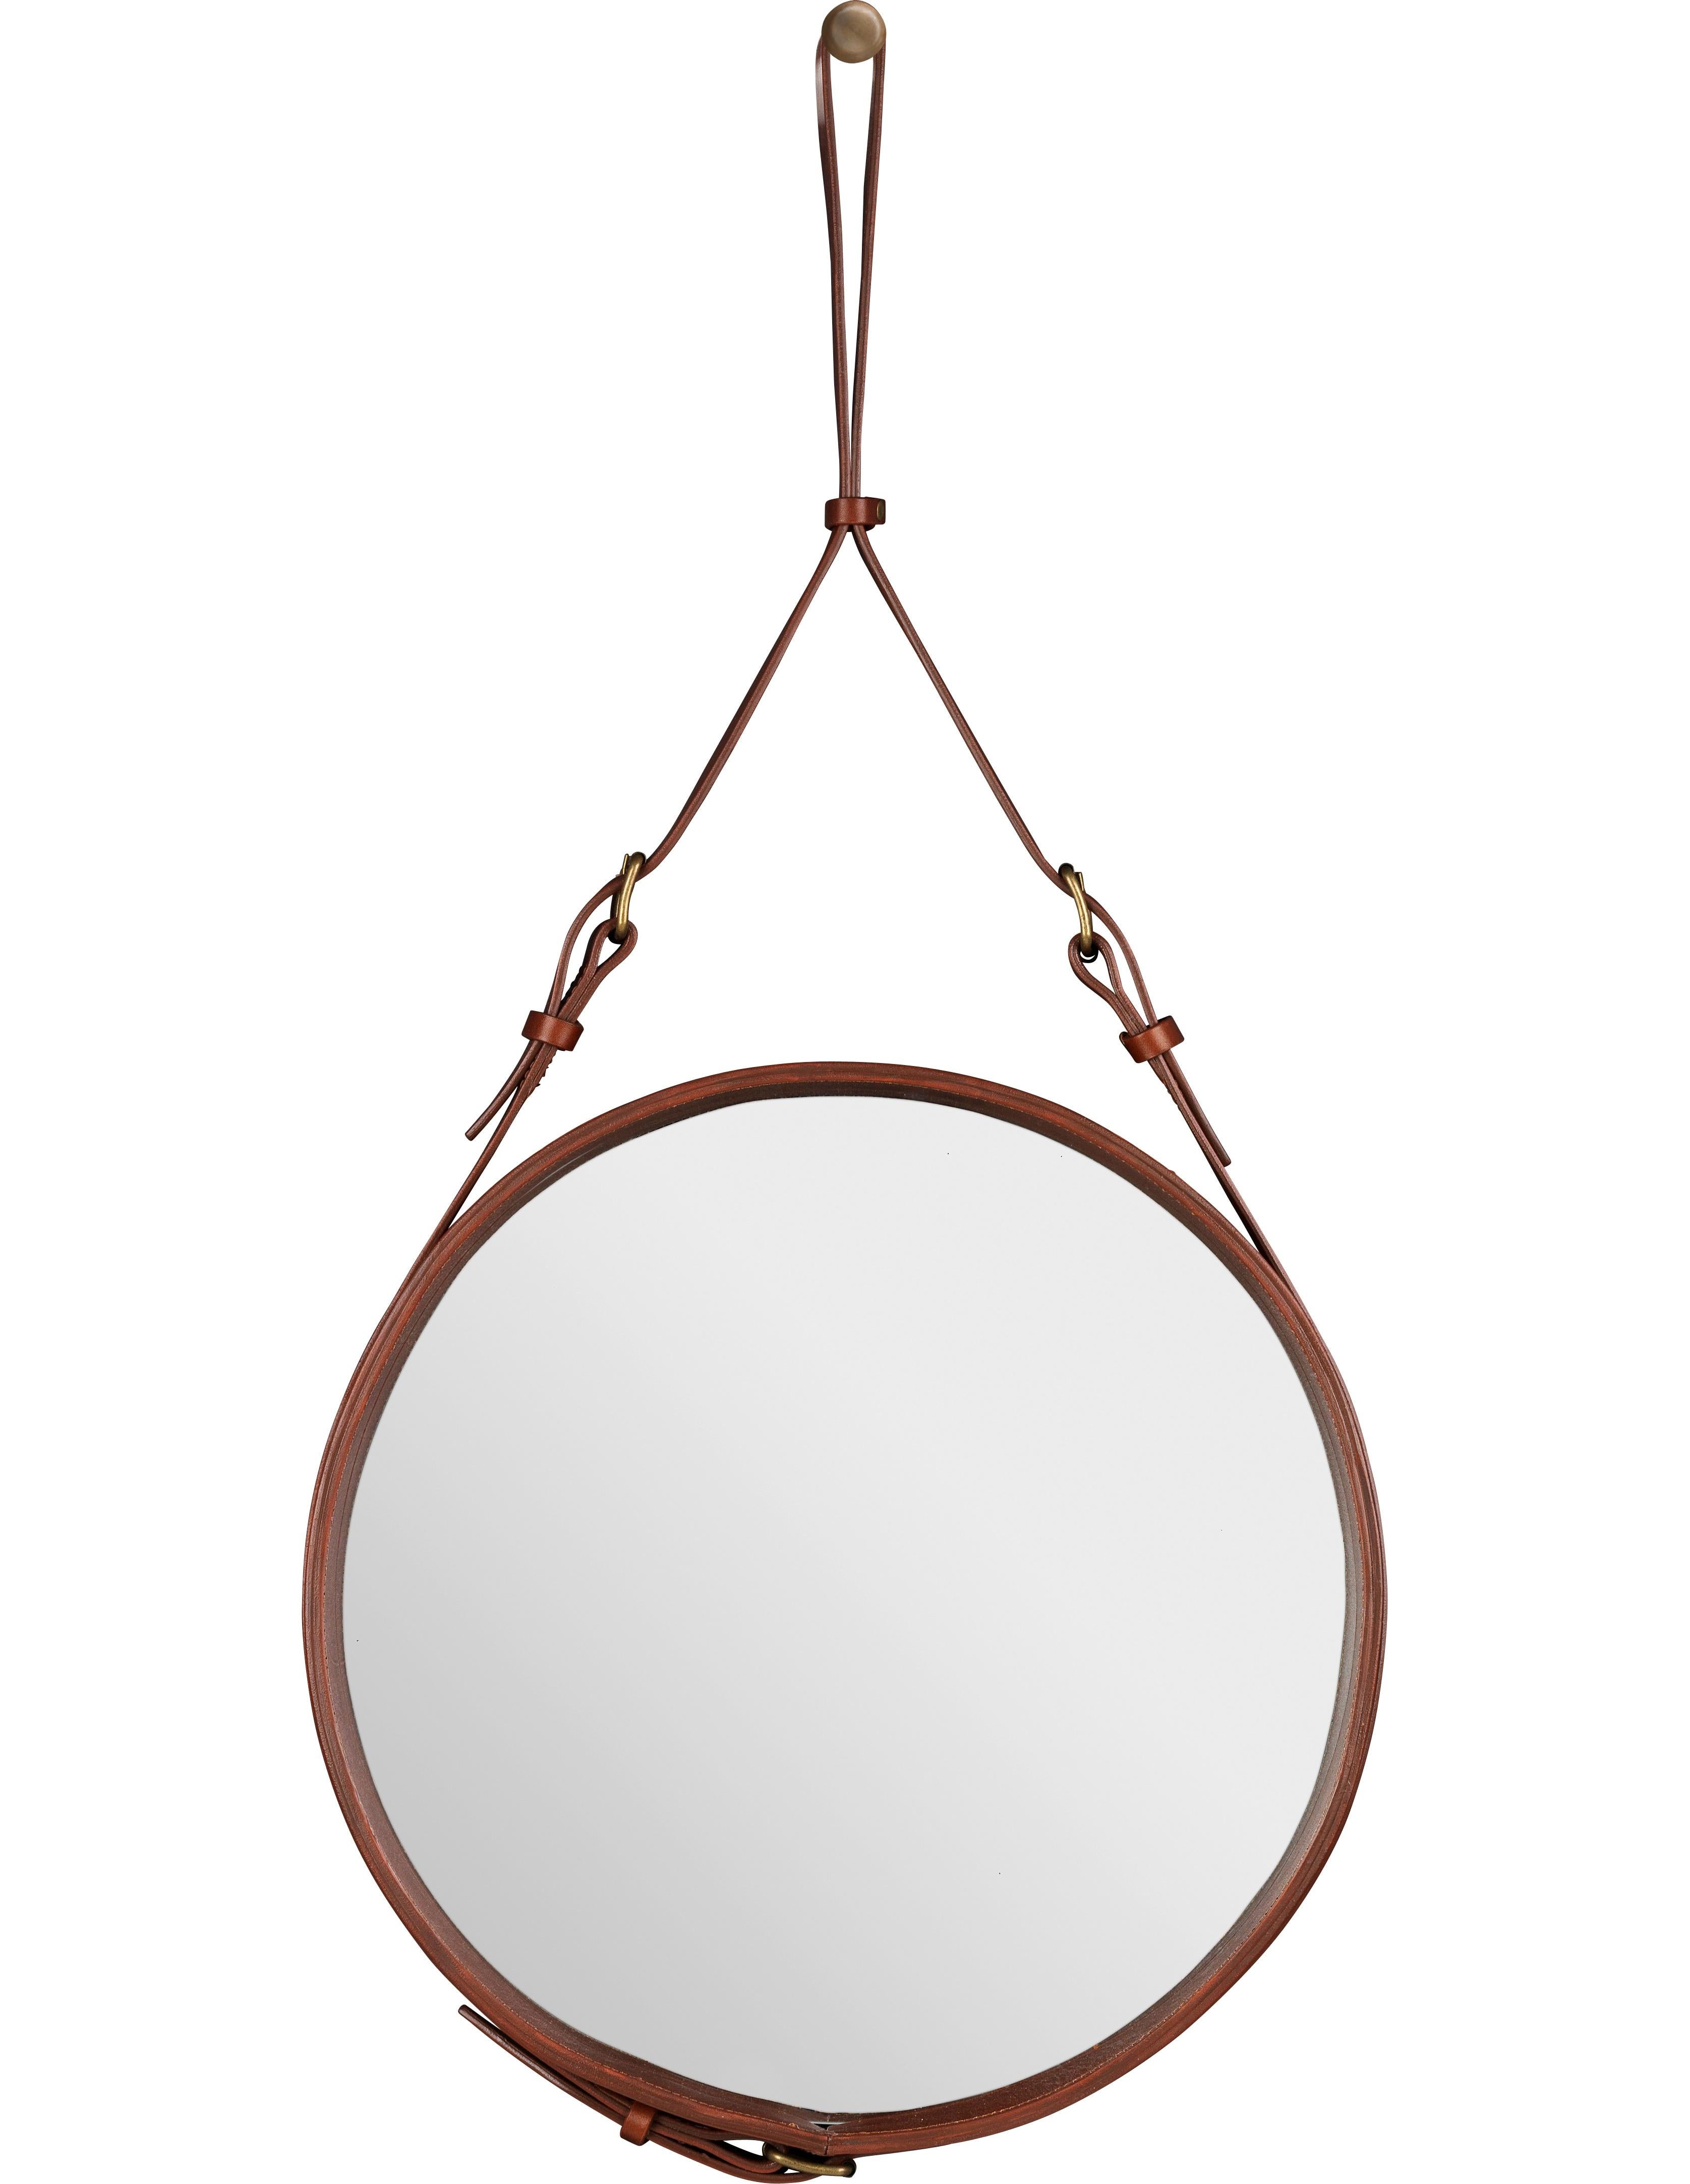 Jacques Adnet petit miroir Circulaire avec cuir brun. Conçu en 1950 par Jacques Adnet et exécuté en cuir, laiton et verre. Le miroir Circulaire est le résultat d'un partenariat entre Adnet et la maison de couture française exclusive Hermès, où Adnet